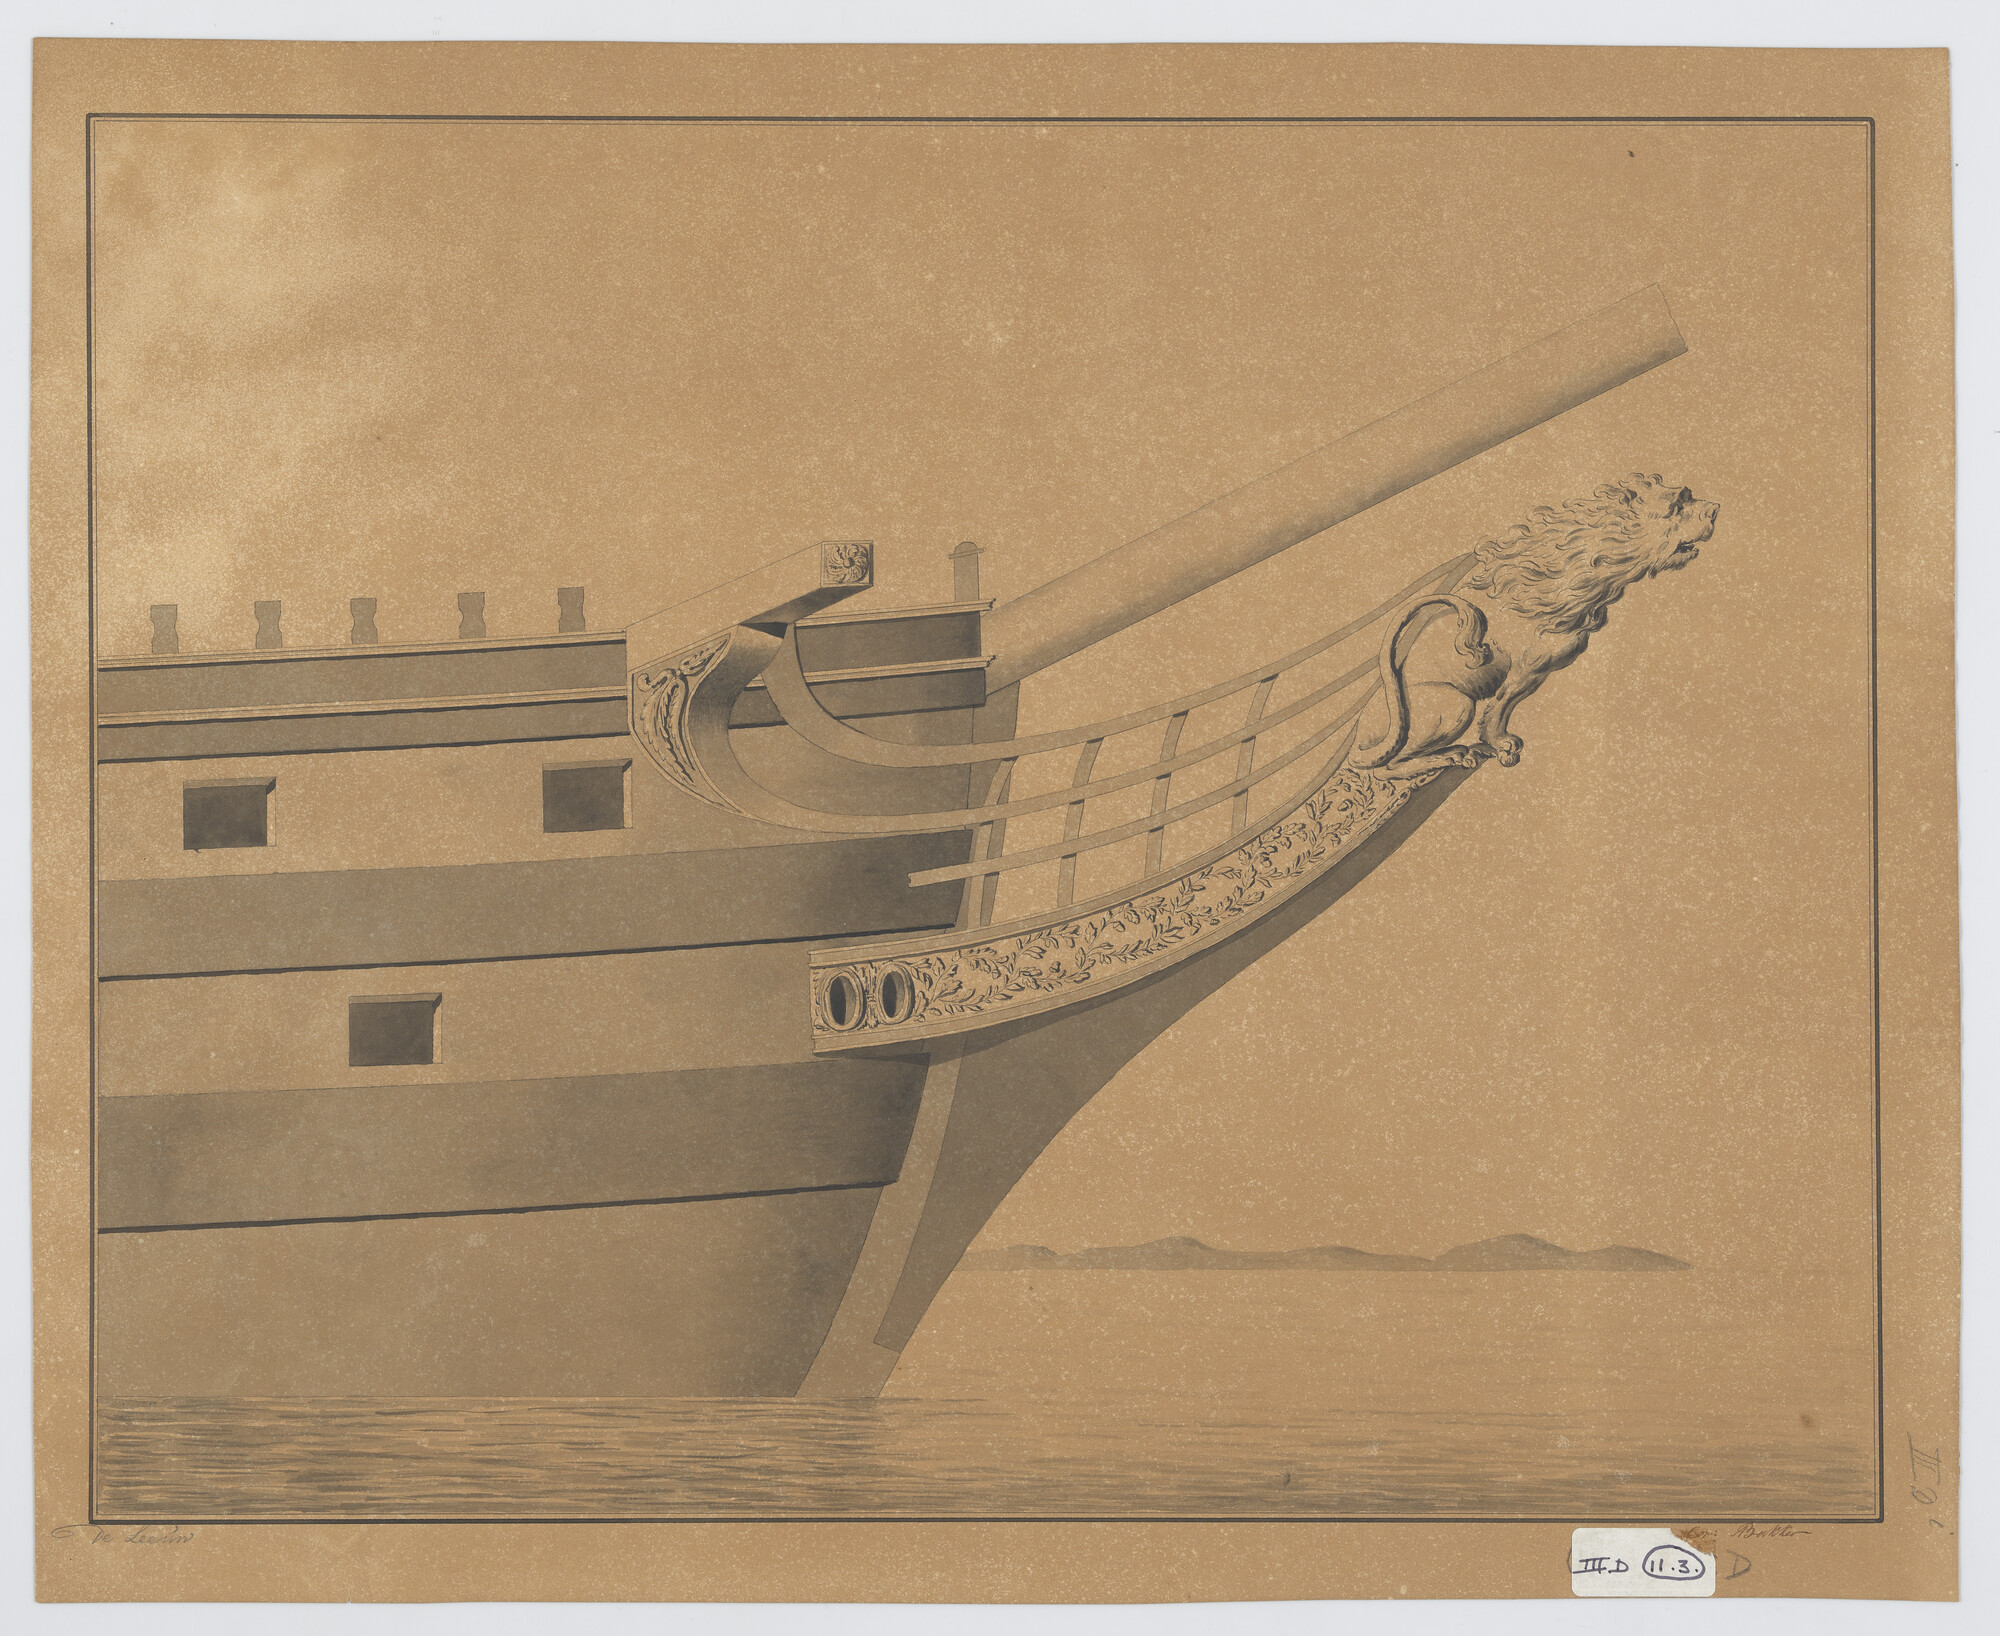 S.0600(01)093; Ontwerp van de scheg van het linieschip 'Leeuw'; technische tekening